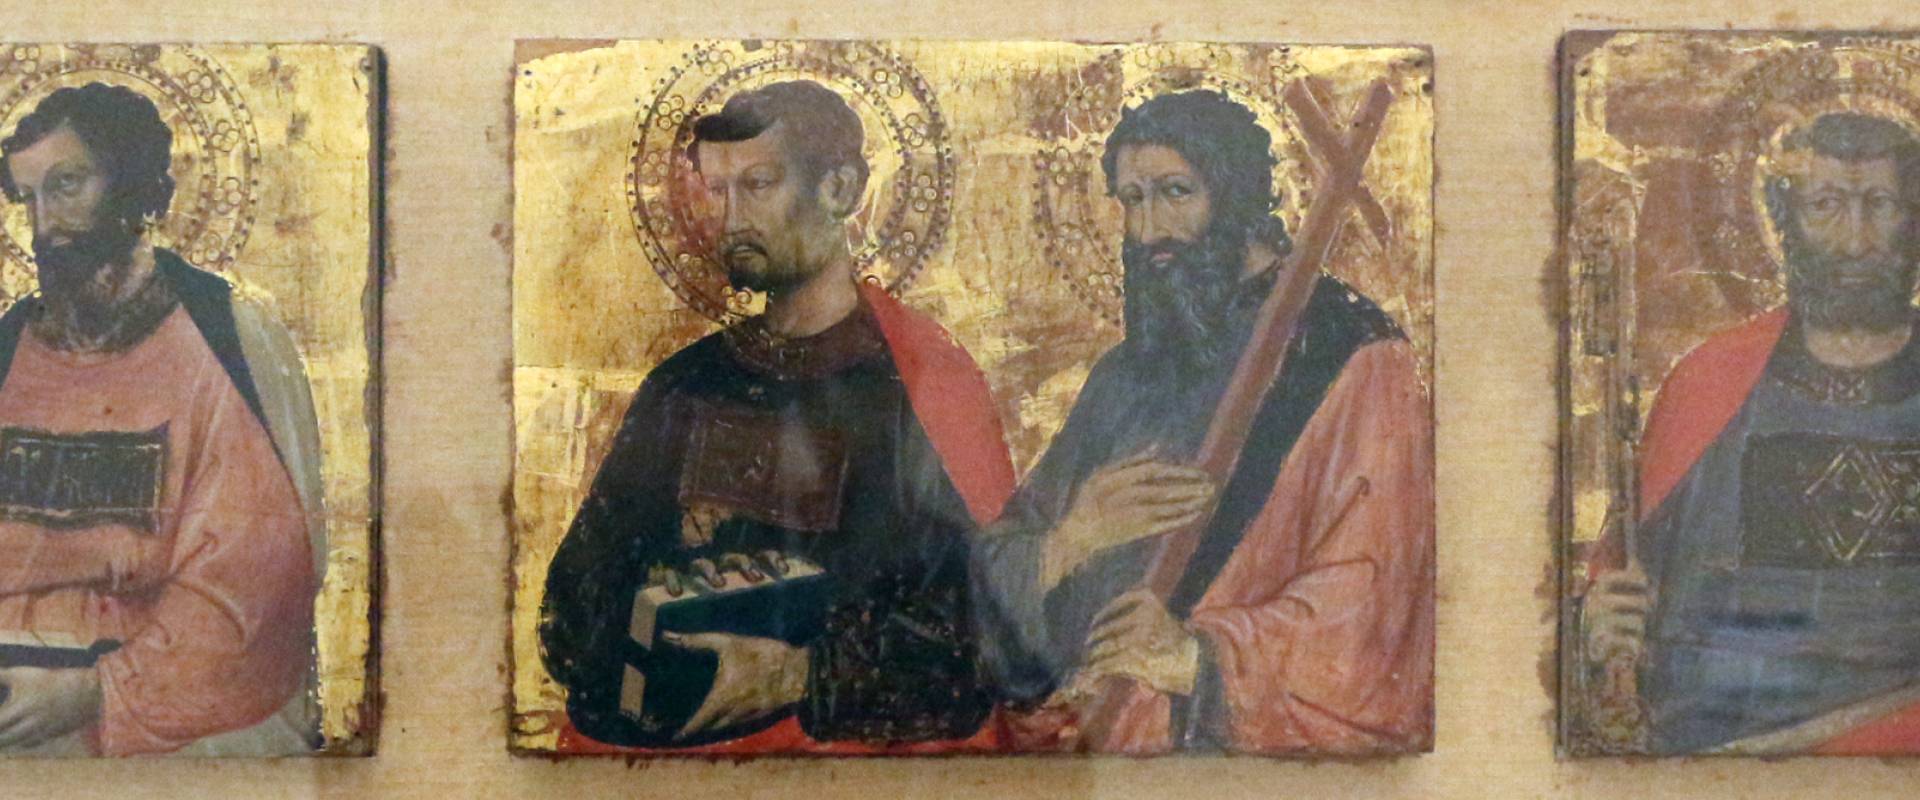 Jacopo di paolo, tre coppie di santi, 1402 ca photo by Sailko